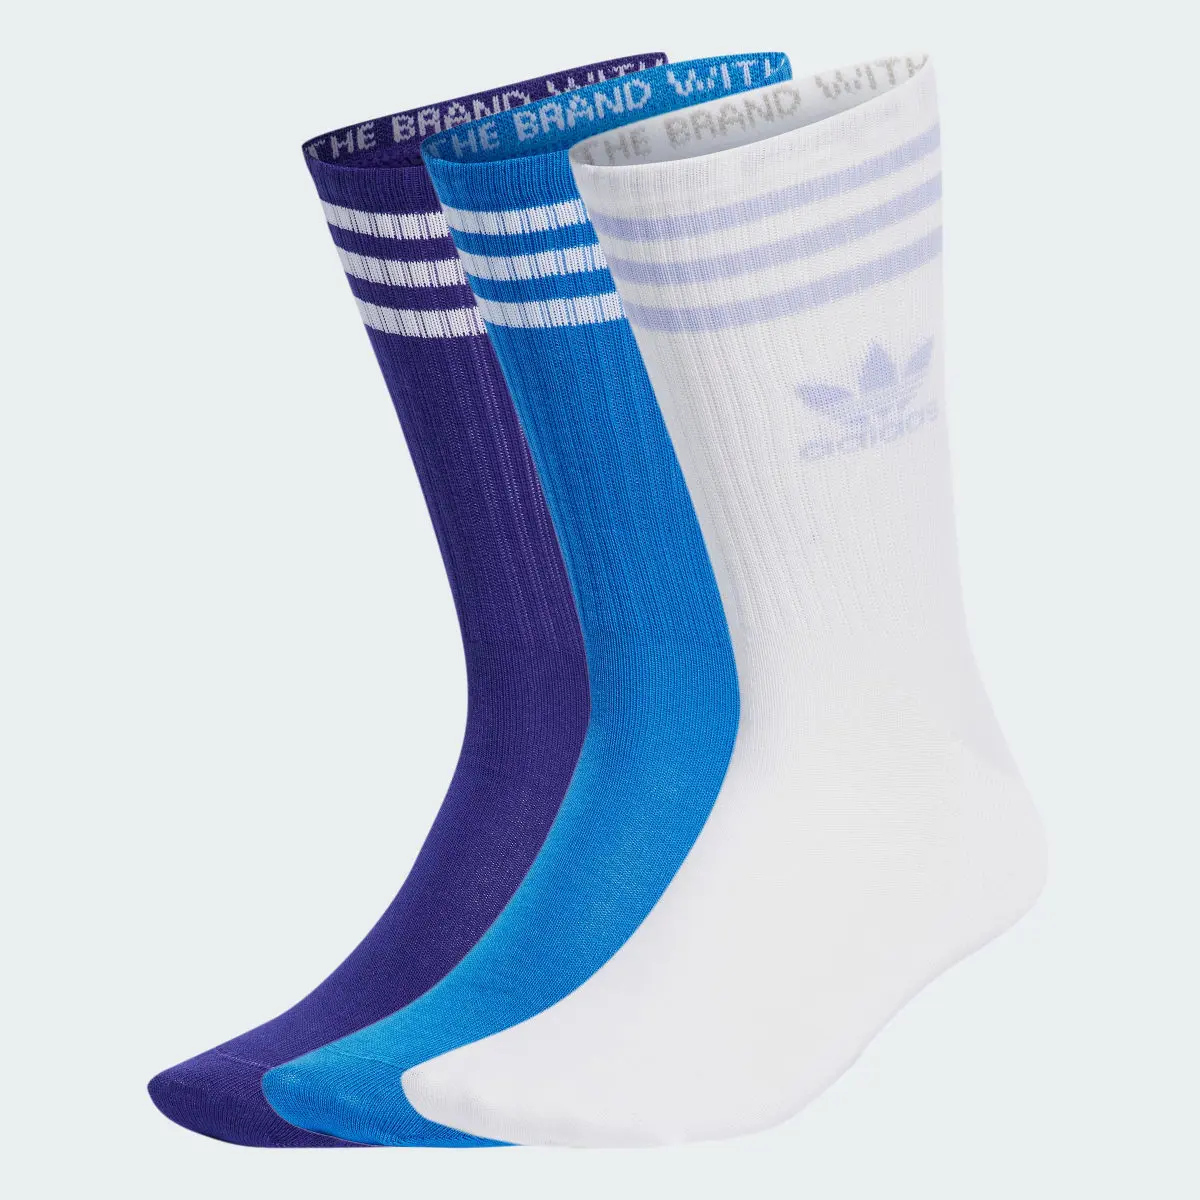 Adidas Mid Cut Bilekli Çorap - 3 Çift. 1